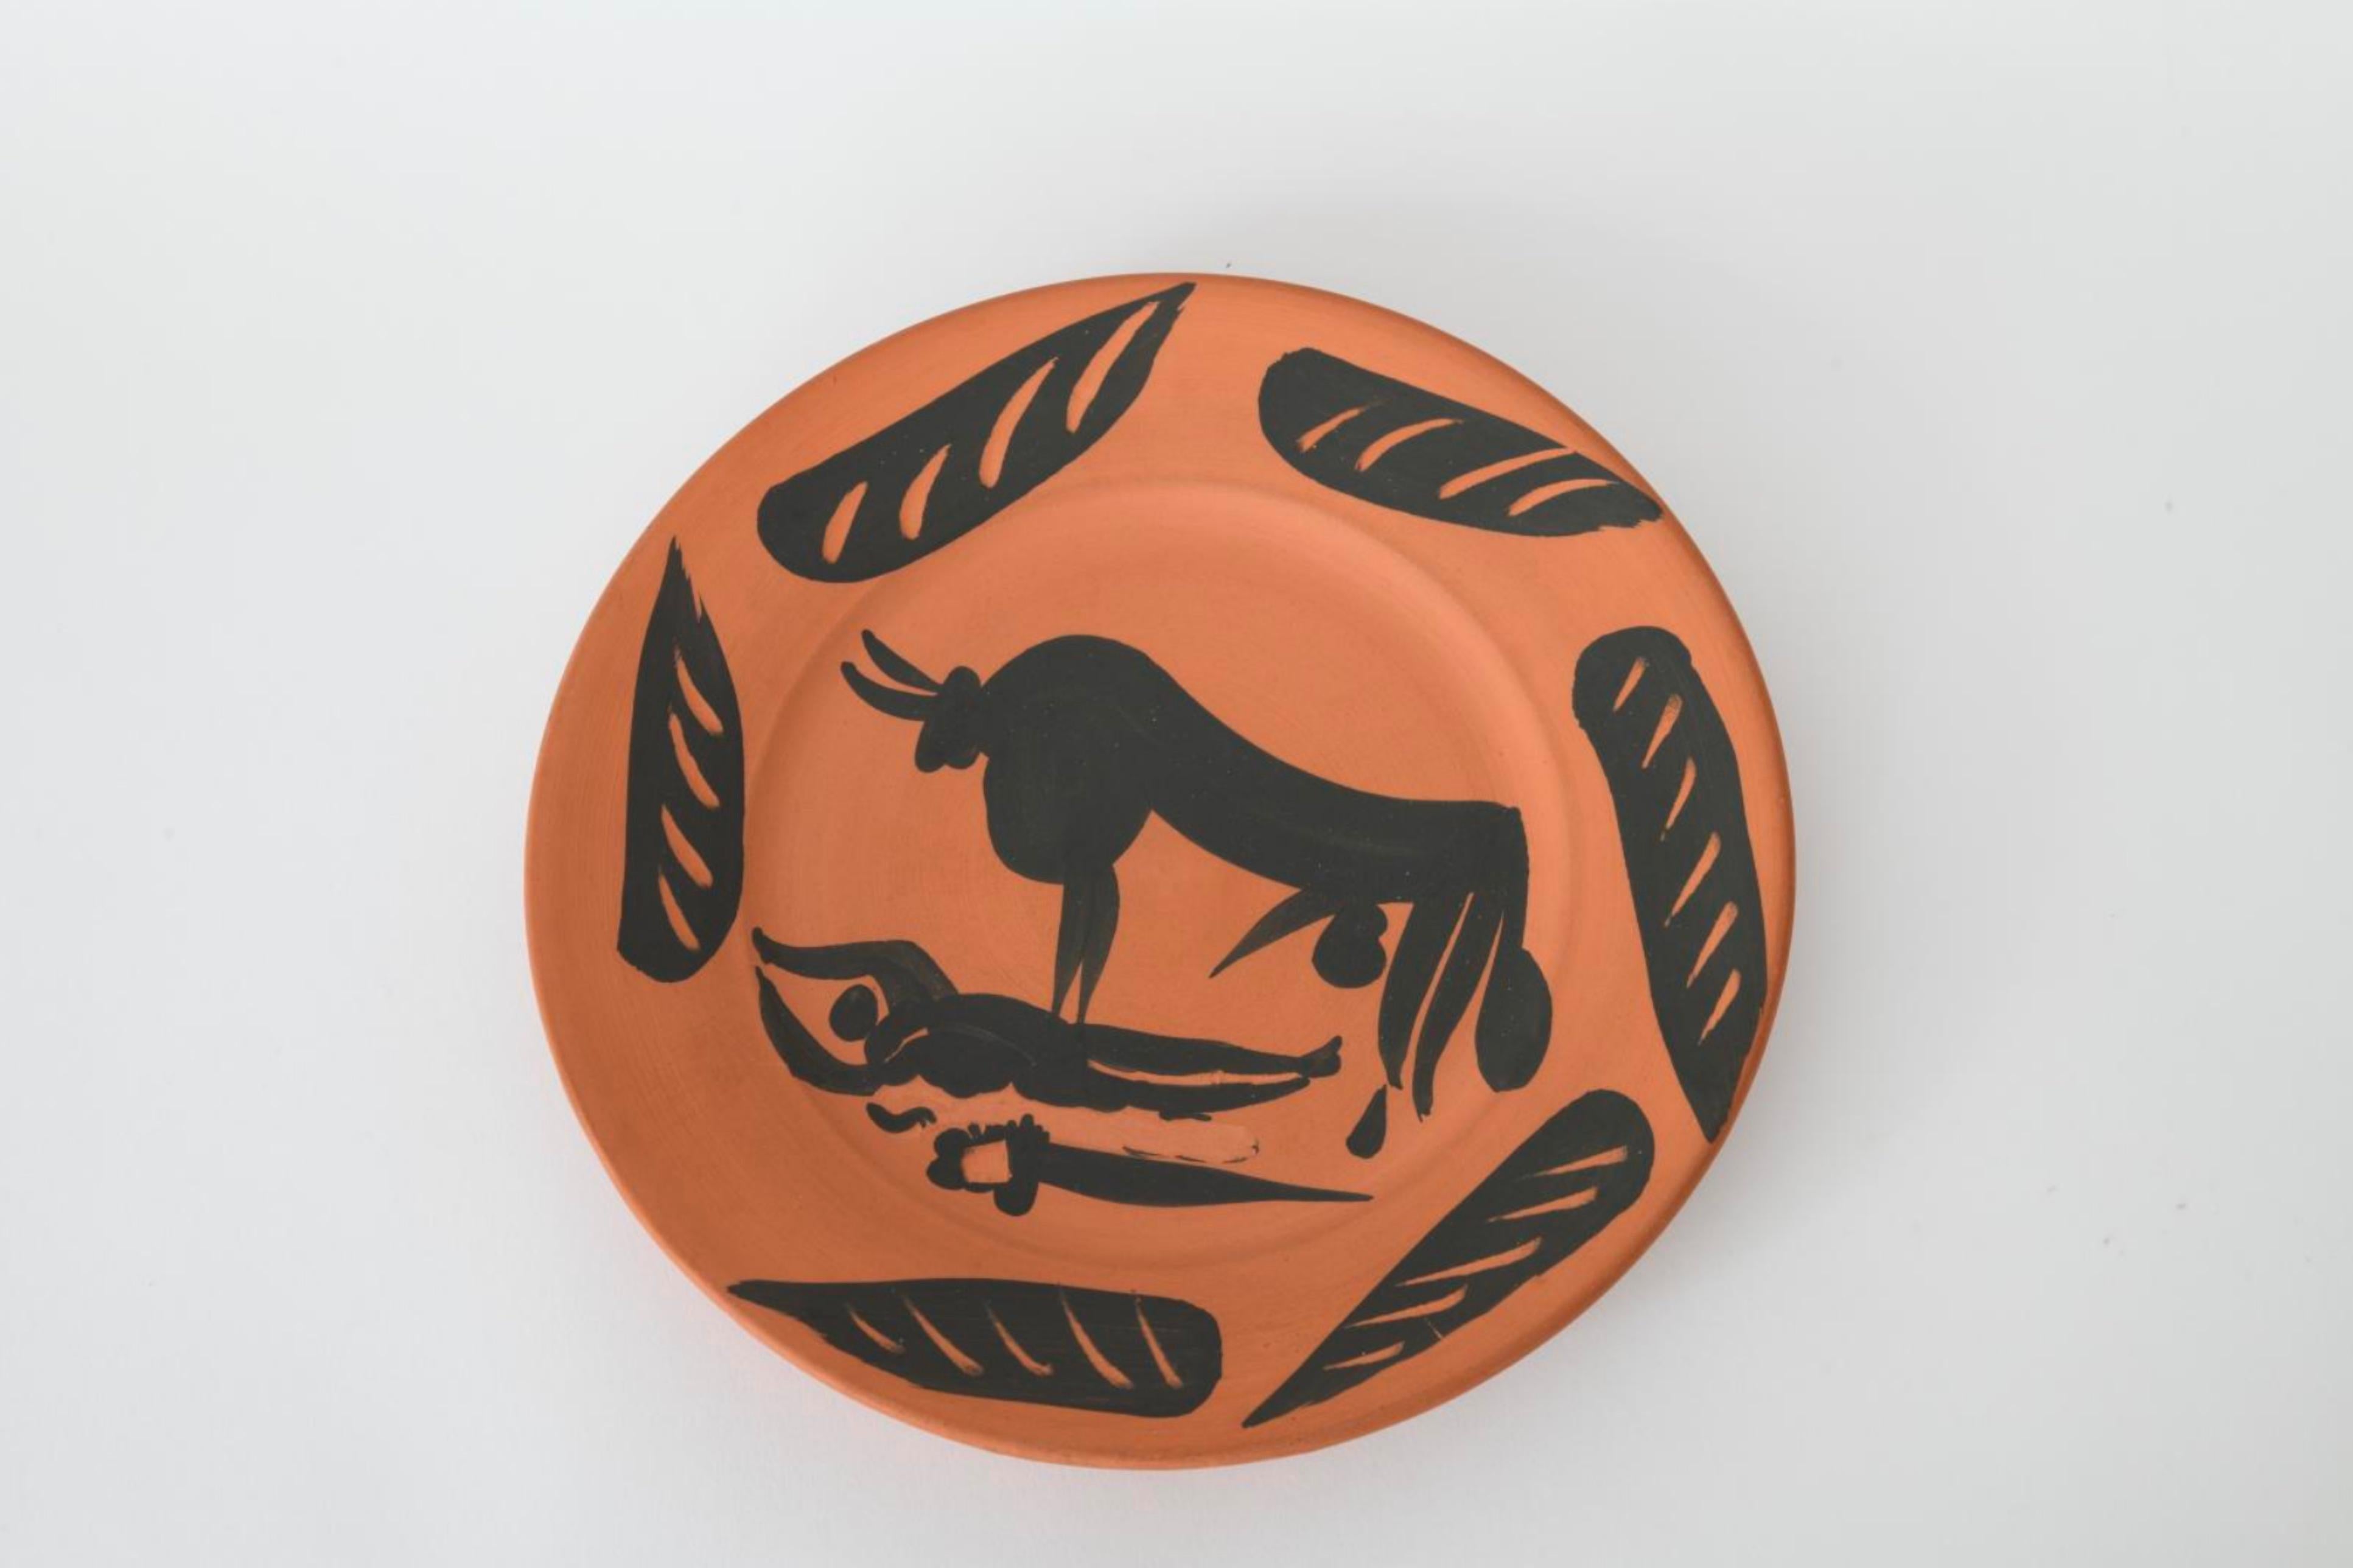 Scne de Tauromachie, Picasso, édition, années 1950, tauromachie, taureau, assiette, motif, animal